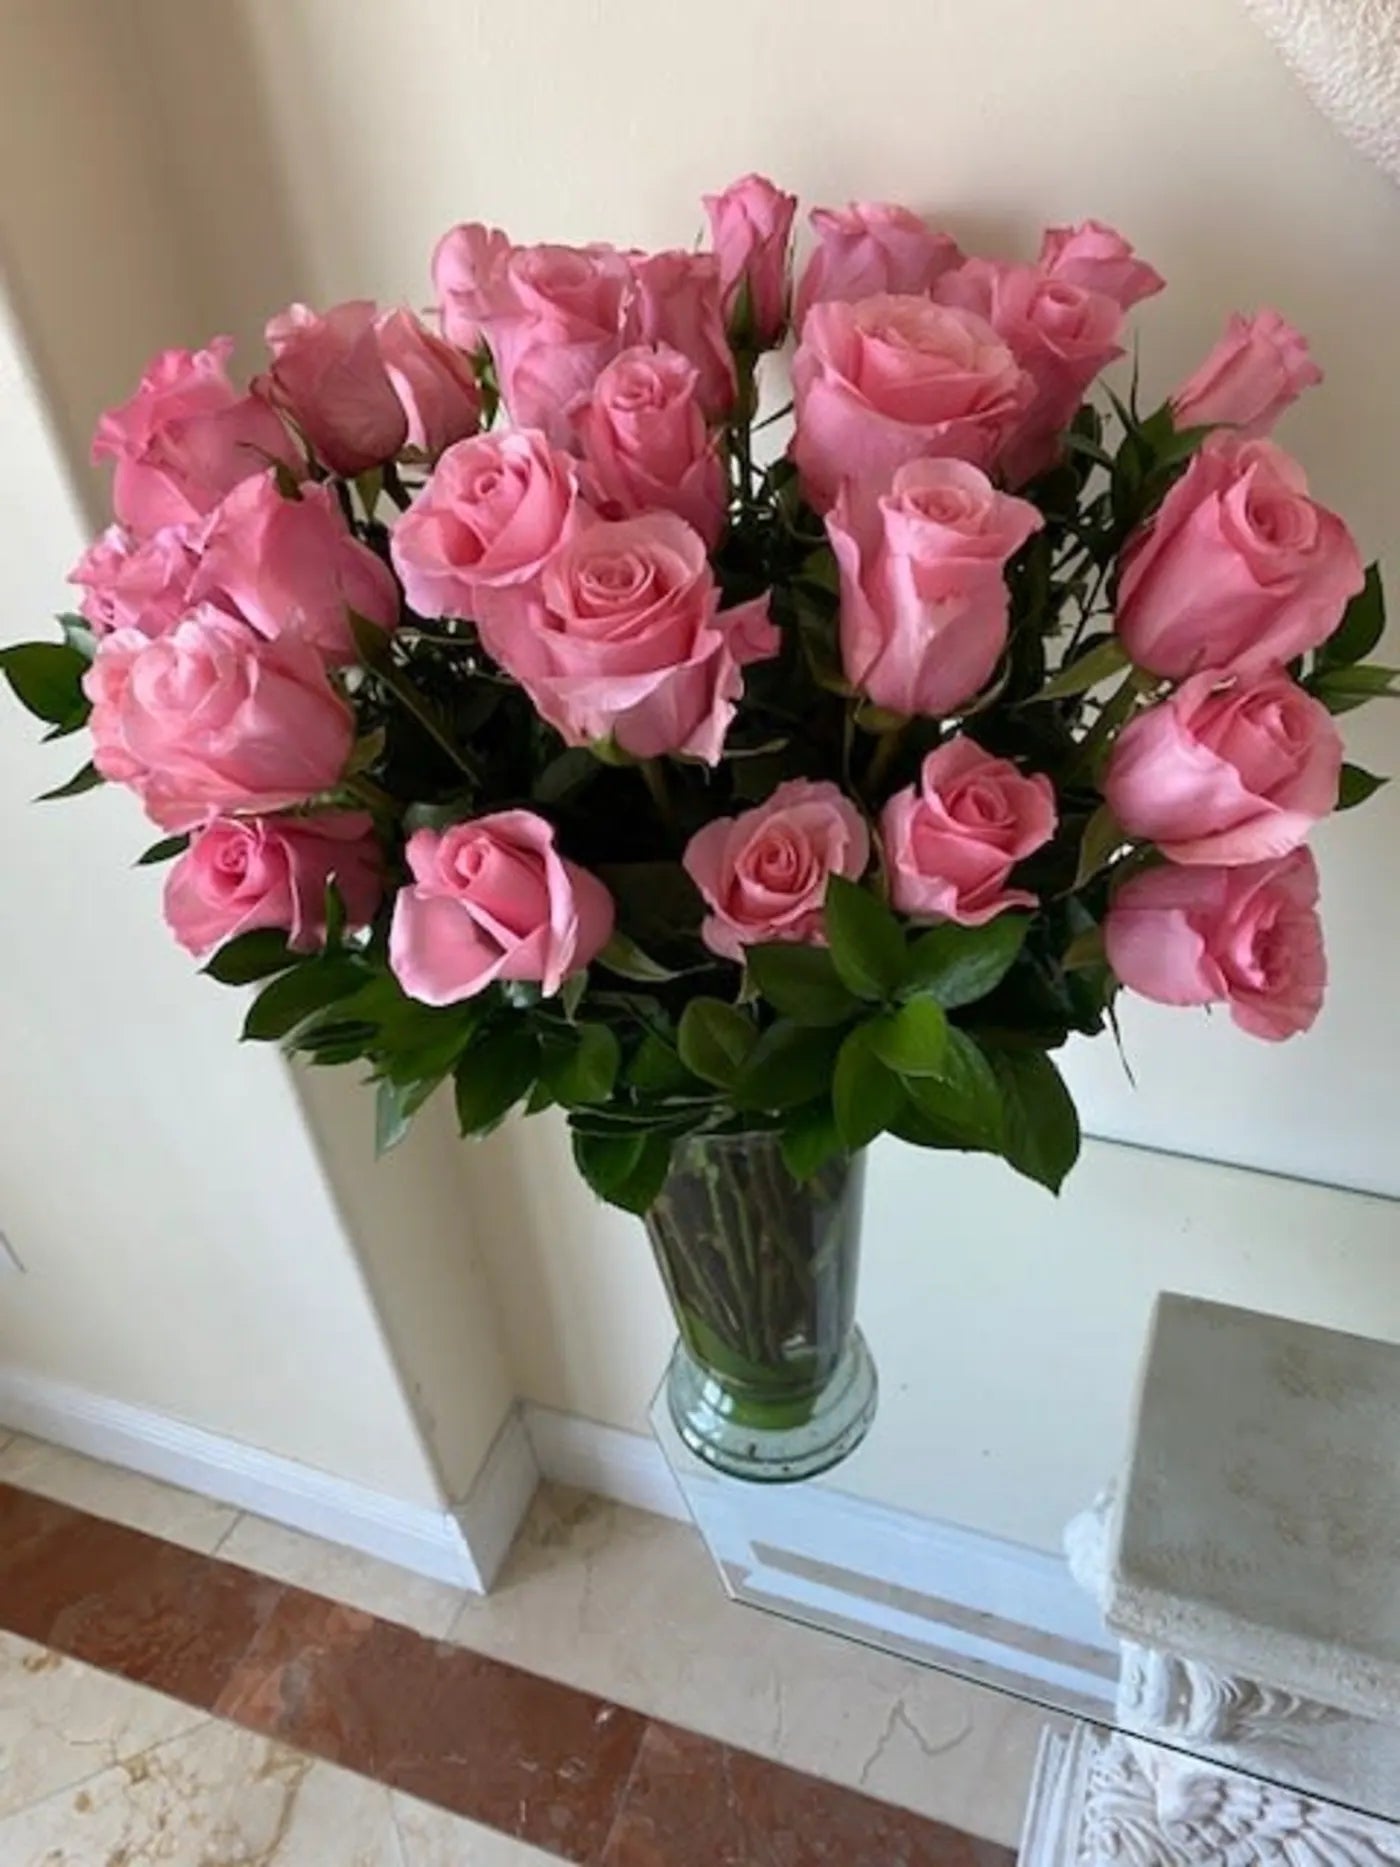 Light Pink Roses in a Vase